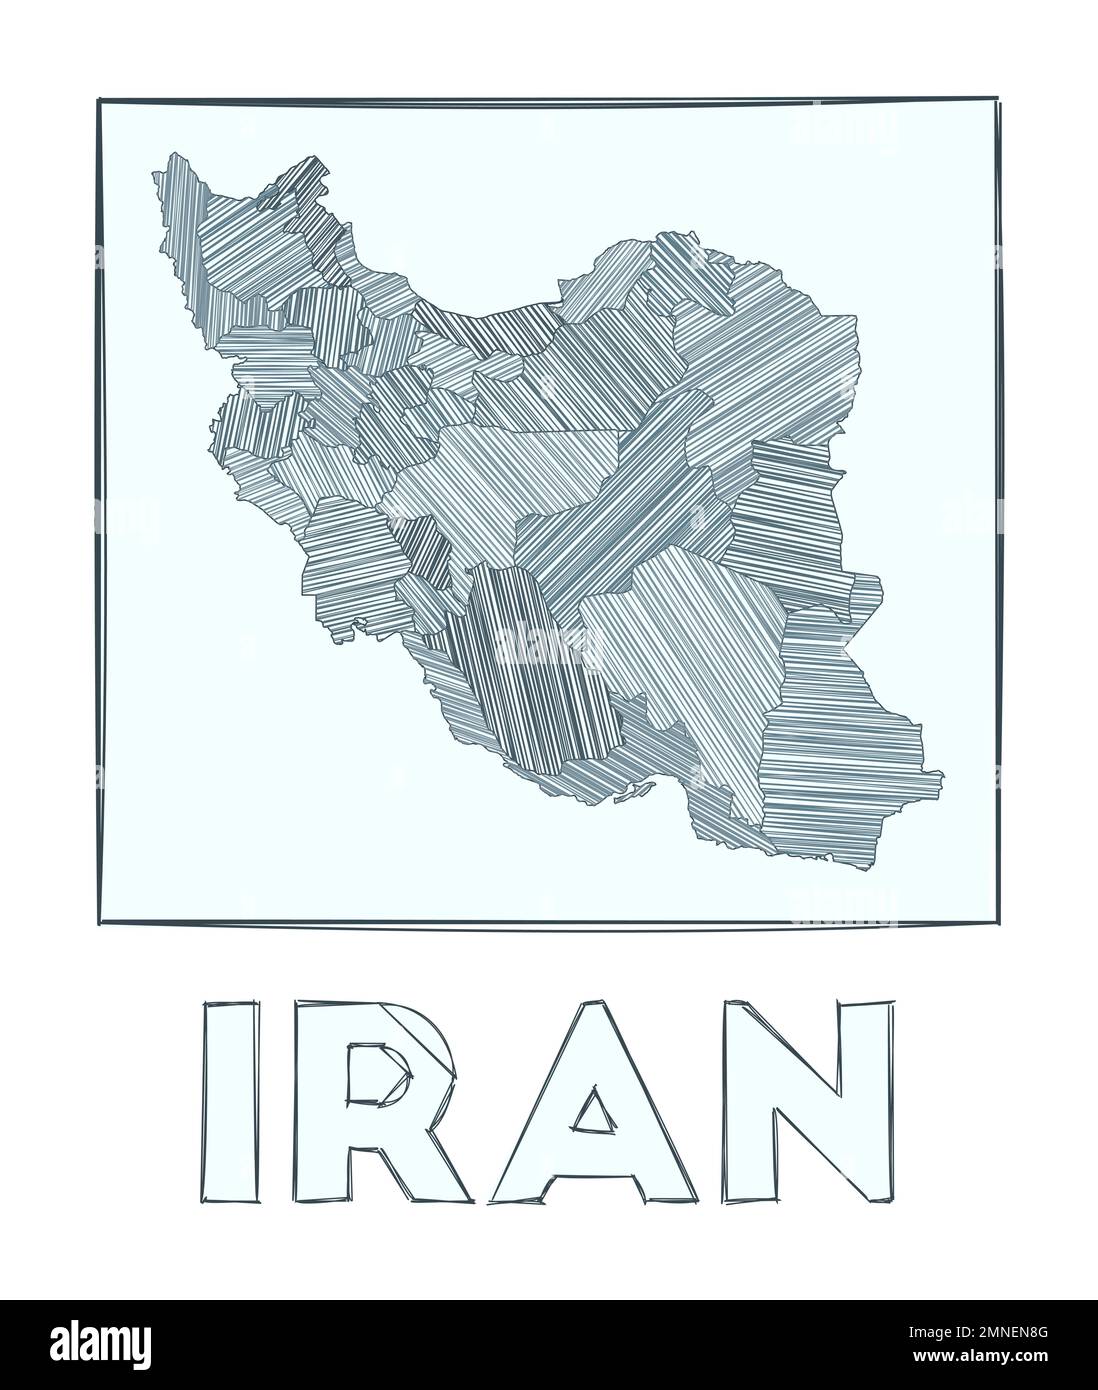 Schizzo della mappa dell'Iran. Mappa del paese disegnata a mano in scala di grigi. Regioni riempite con strisce di hachure. Illustrazione vettoriale. Illustrazione Vettoriale